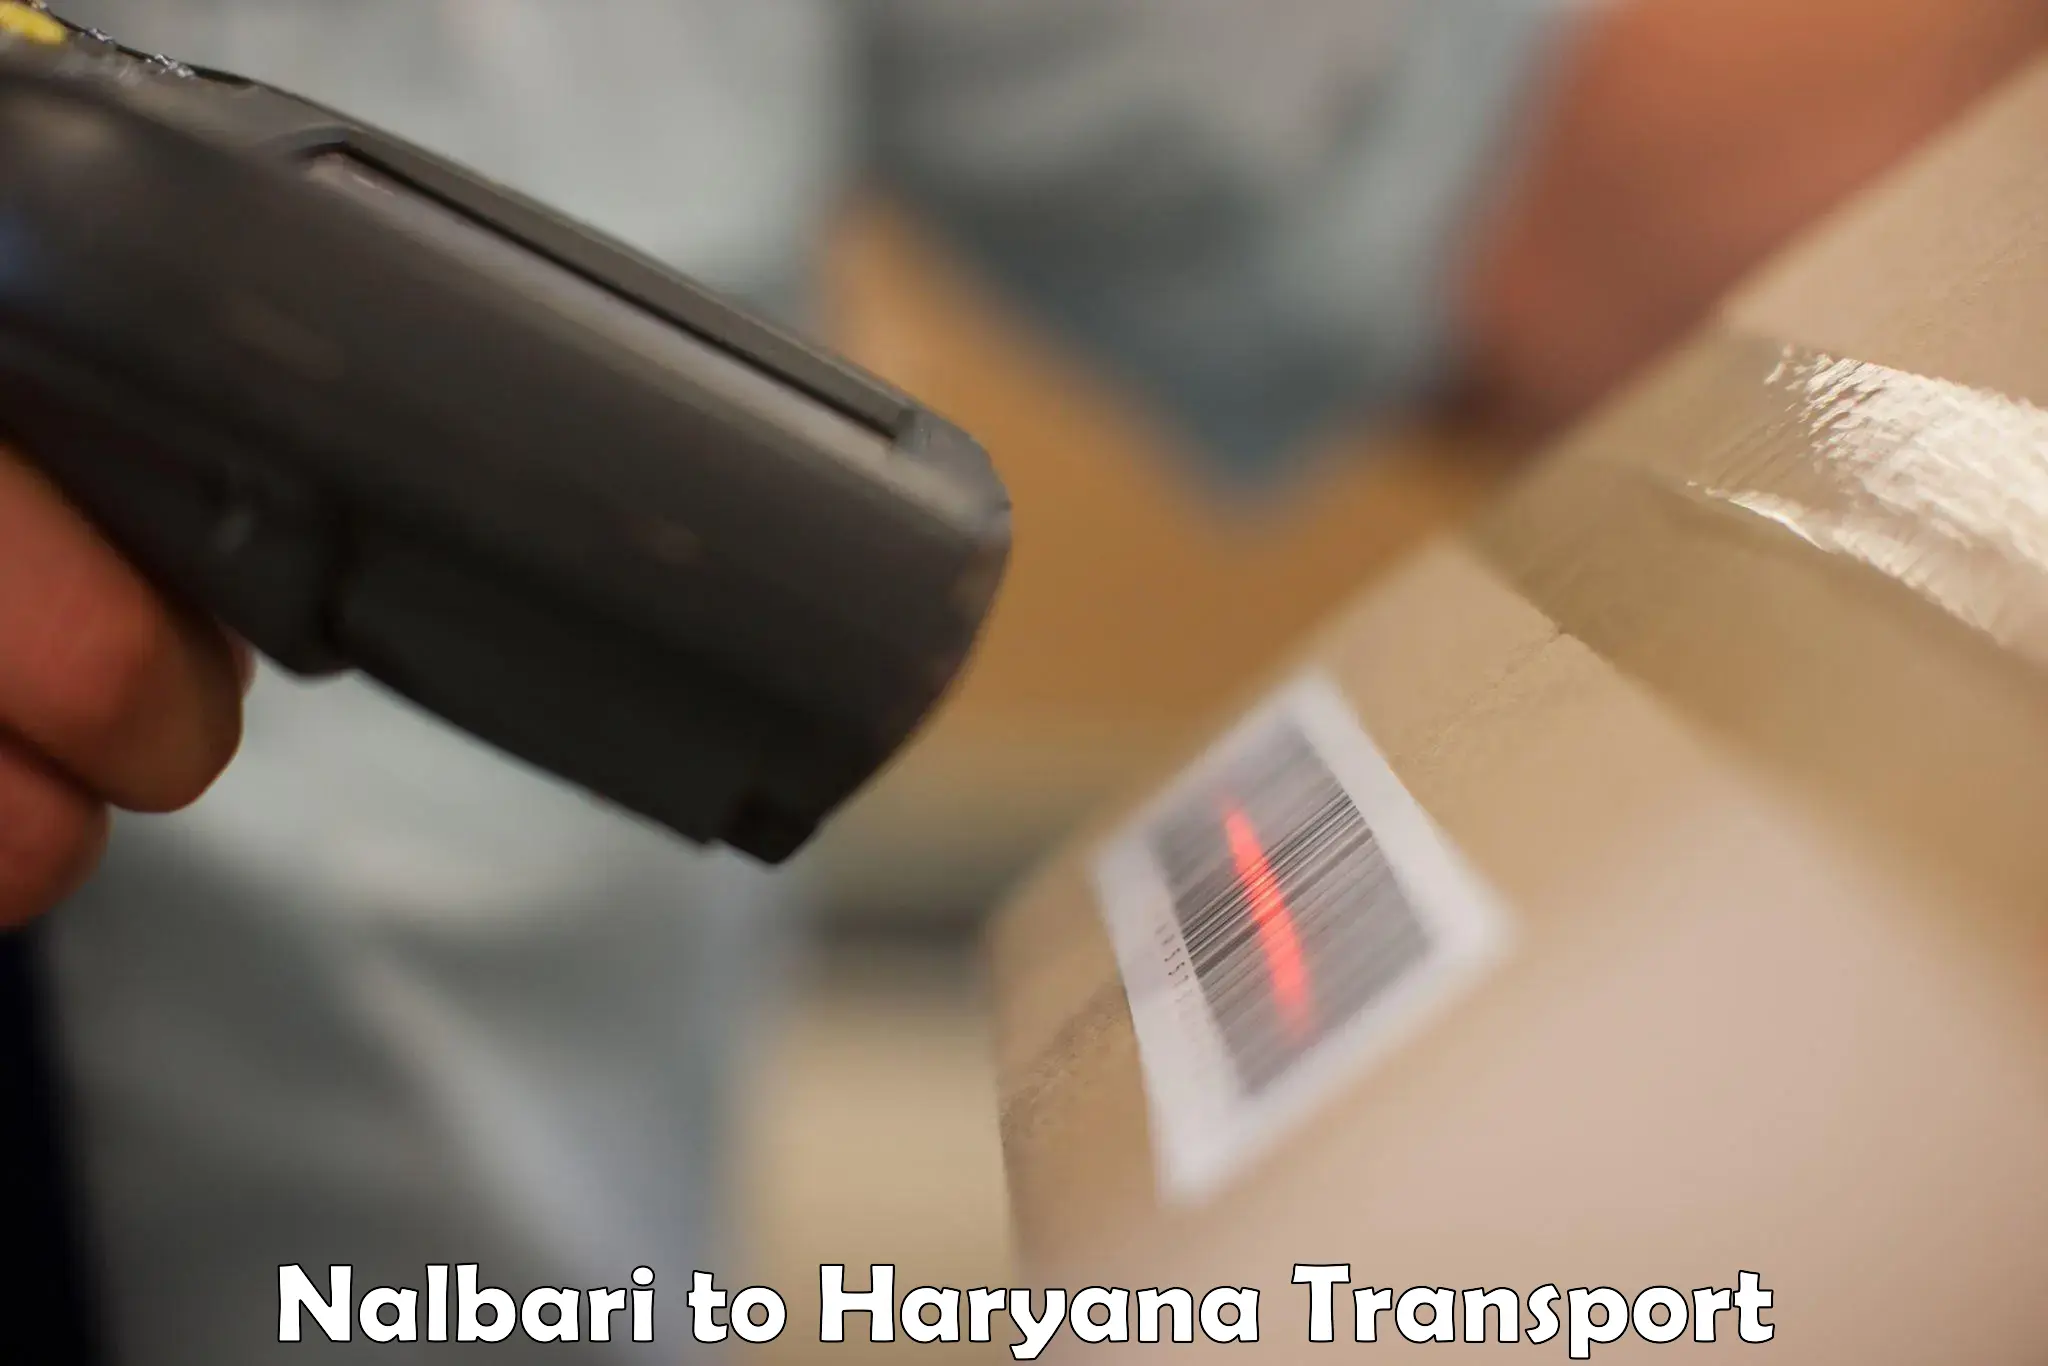 Delivery service Nalbari to Chirya